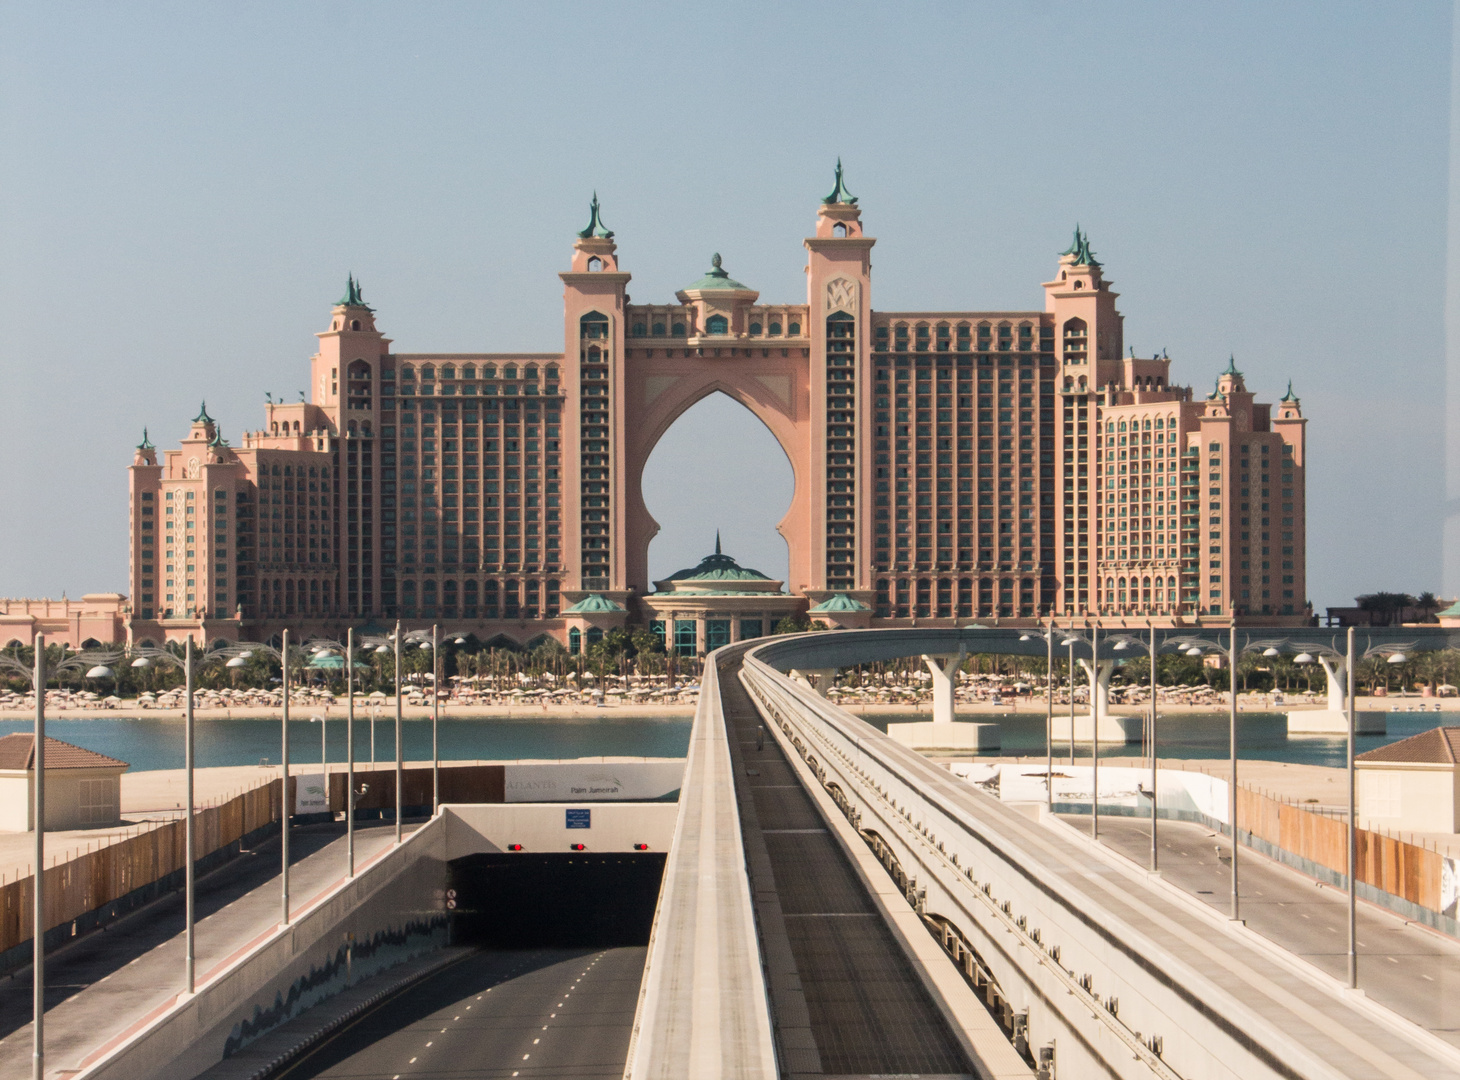 Blick auf das Hotel "Atlantis, The Palm", fotografiert von der 2012 fertiggestellten Metro-Strecke